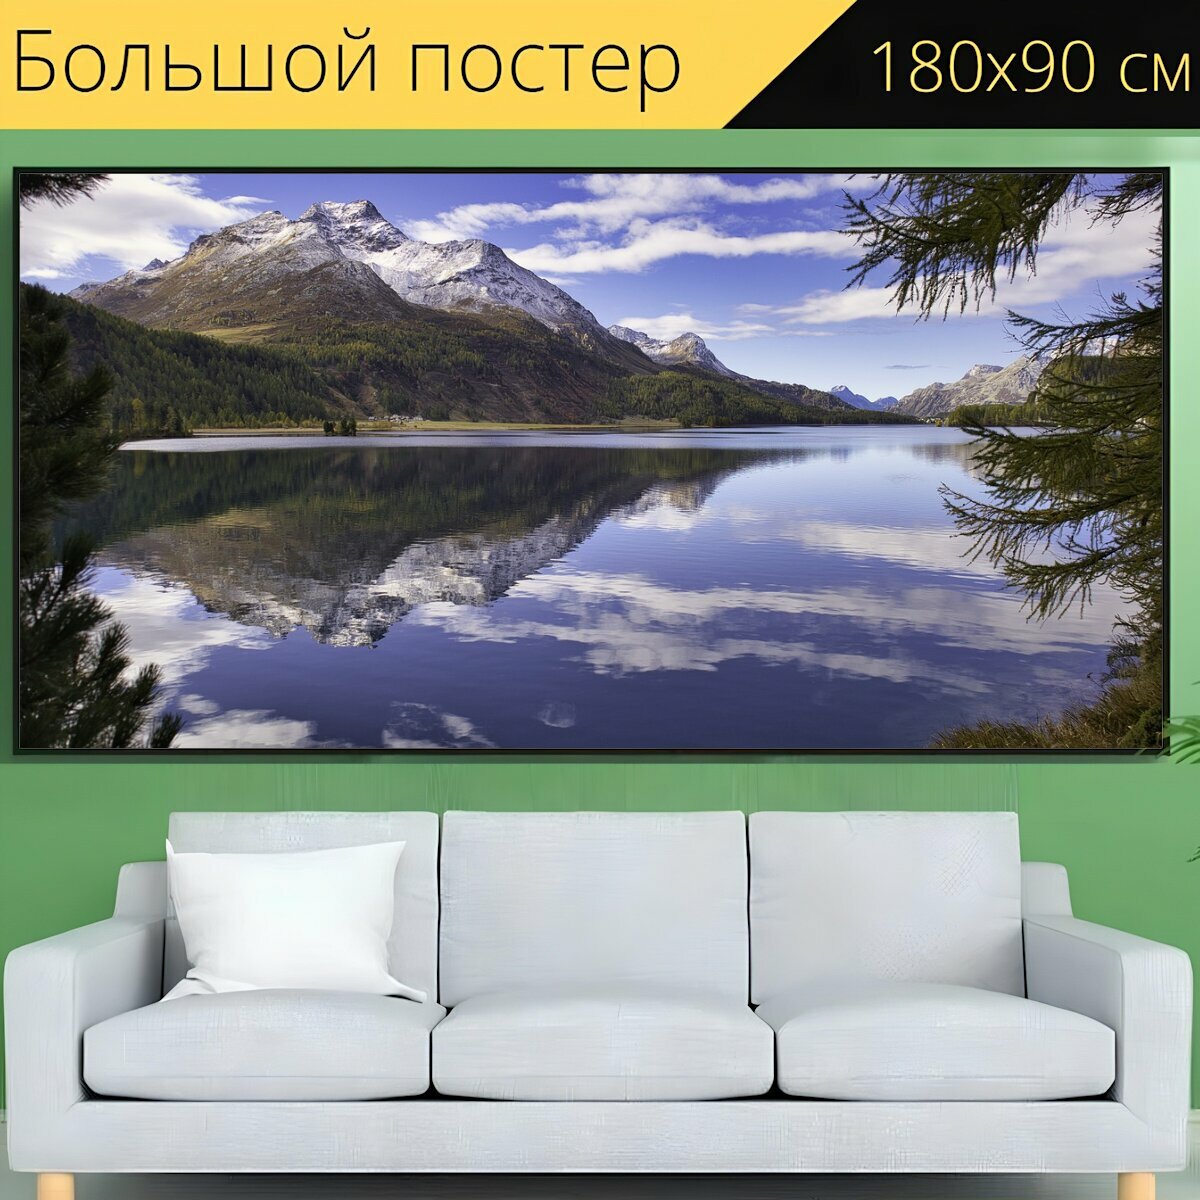 Большой постер "Горное озеро, озеро, альпы" 180 x 90 см. для интерьера